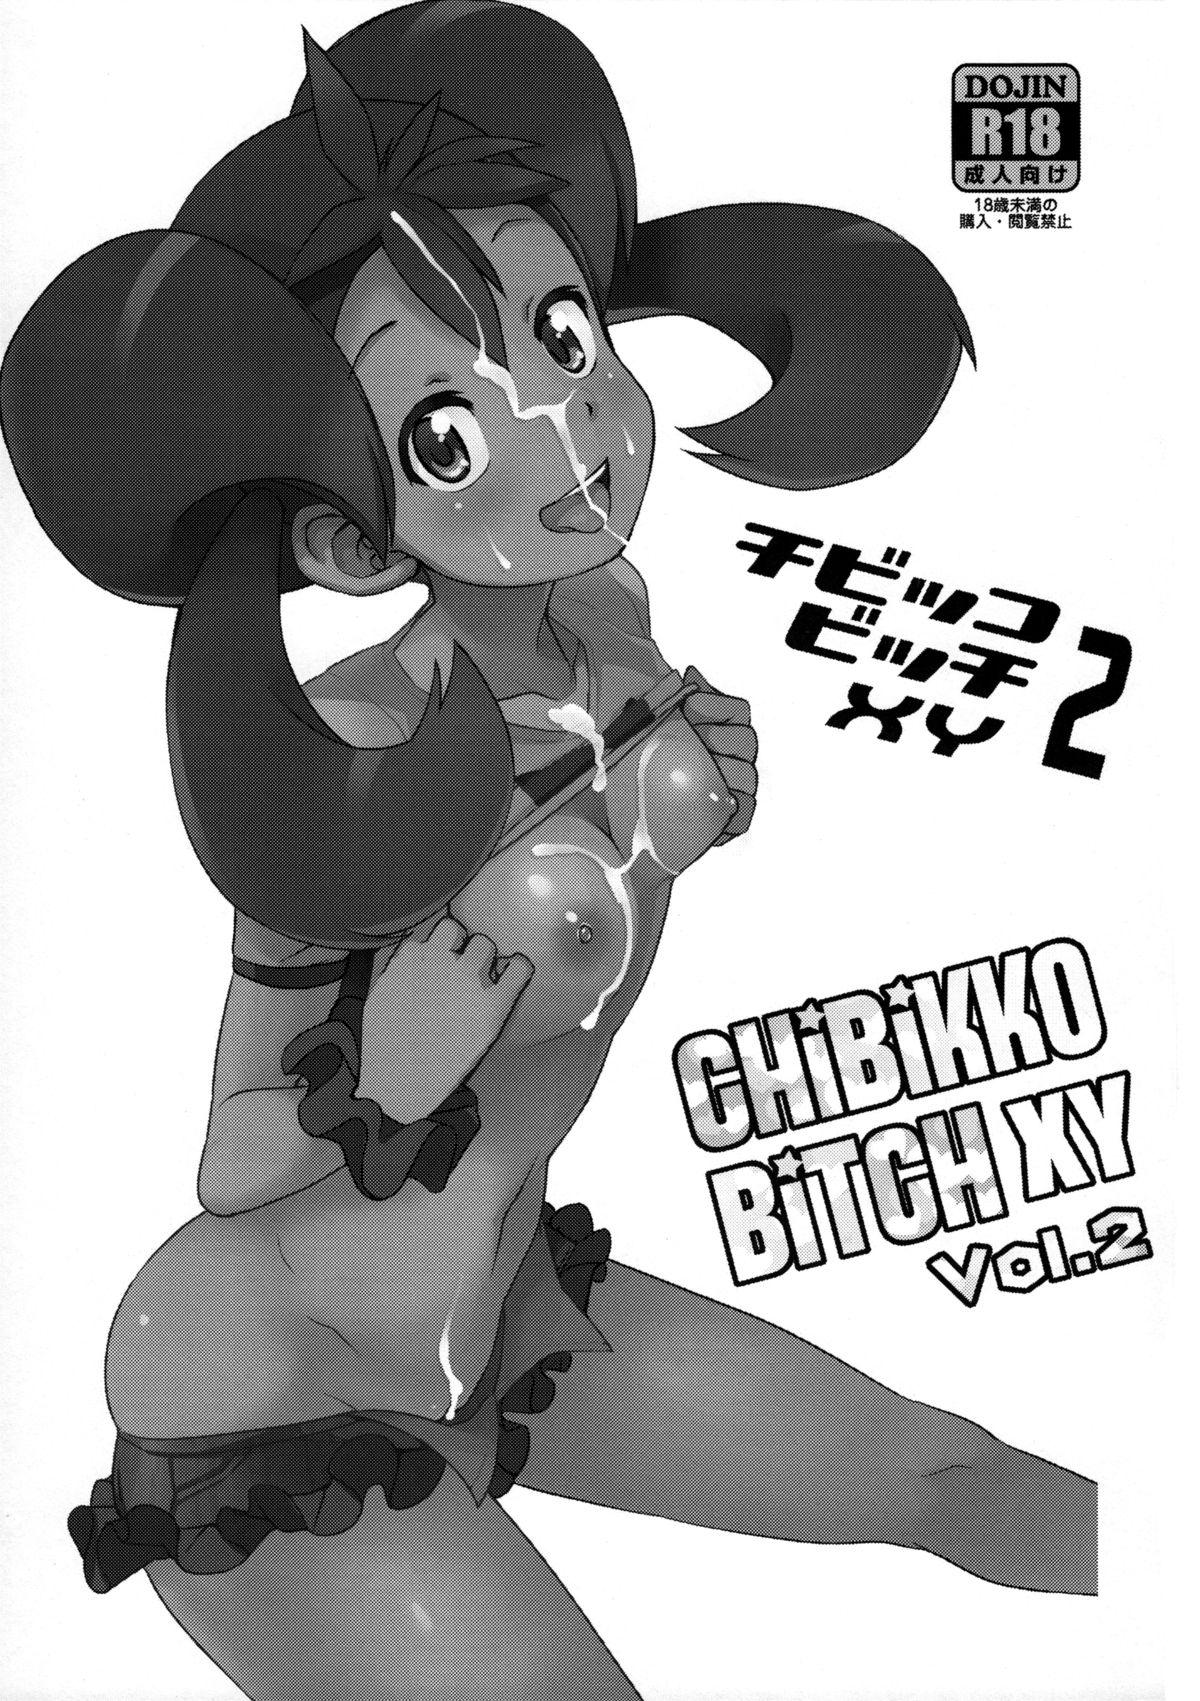 Deutsche Chibikko Bitch XY 2 - Pokemon Rough Porn - Page 2